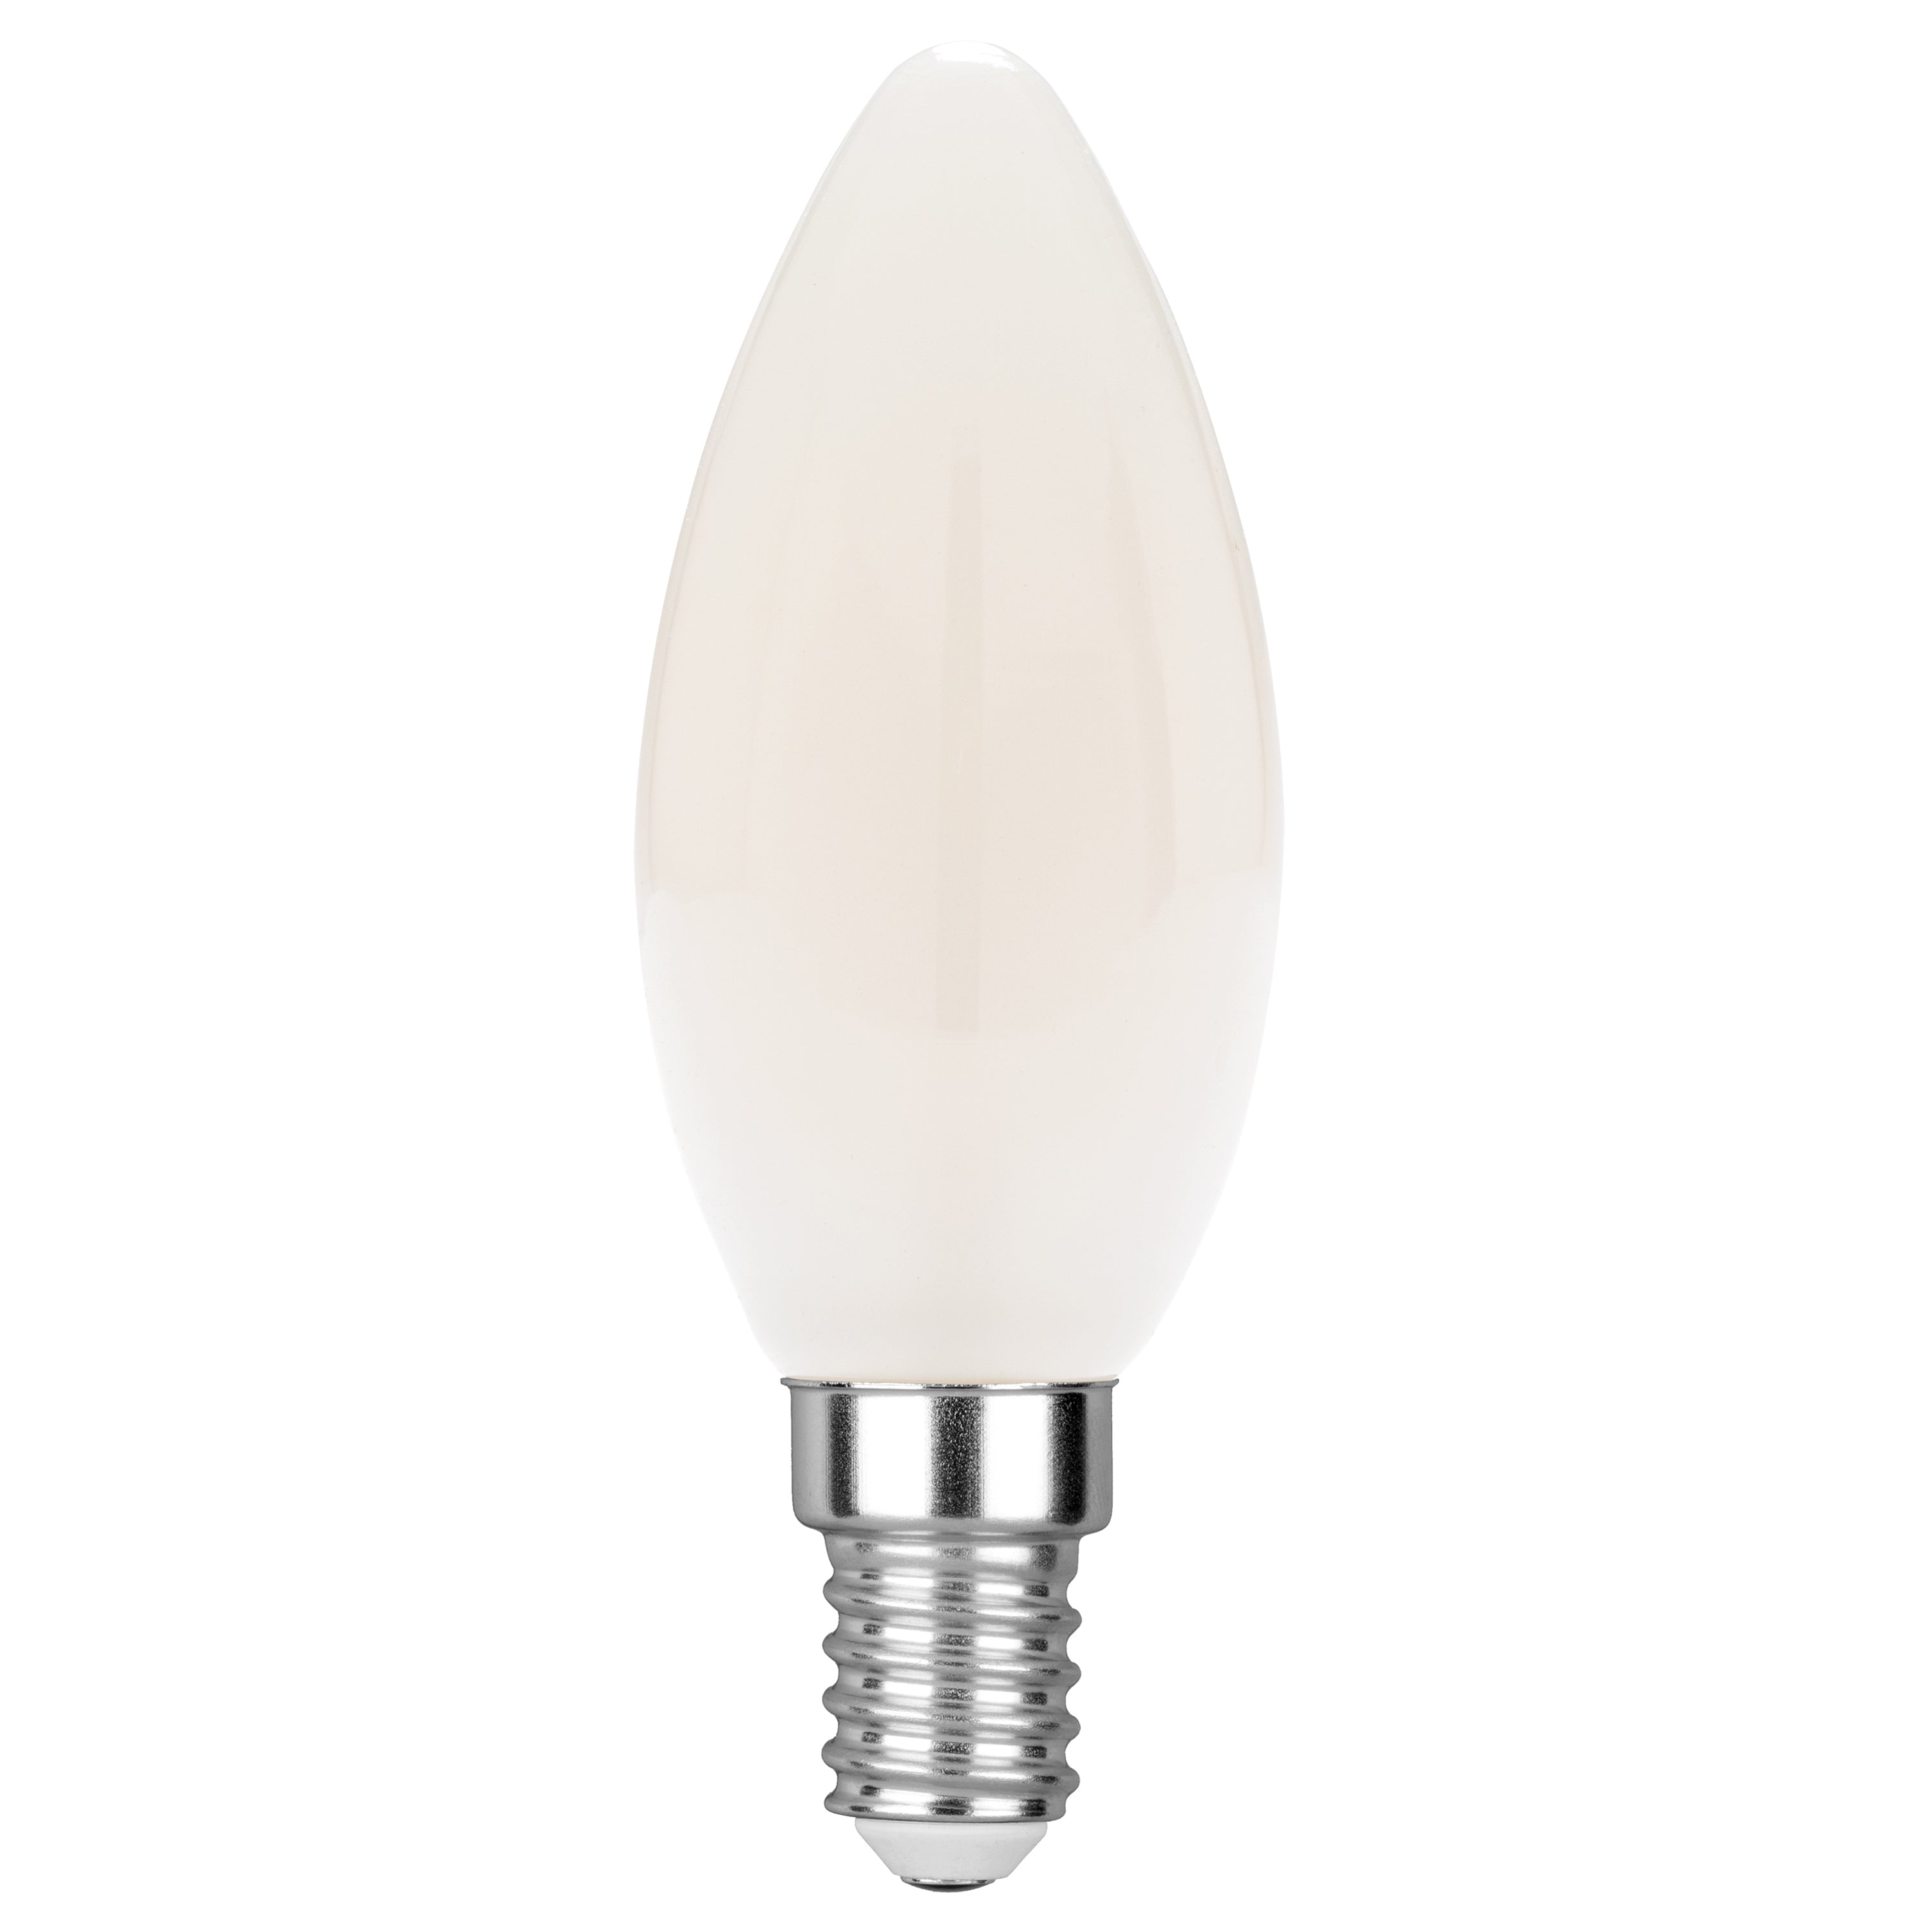 Lampadina led LUXA filamento candela bianco E14 6W 680L 35mm